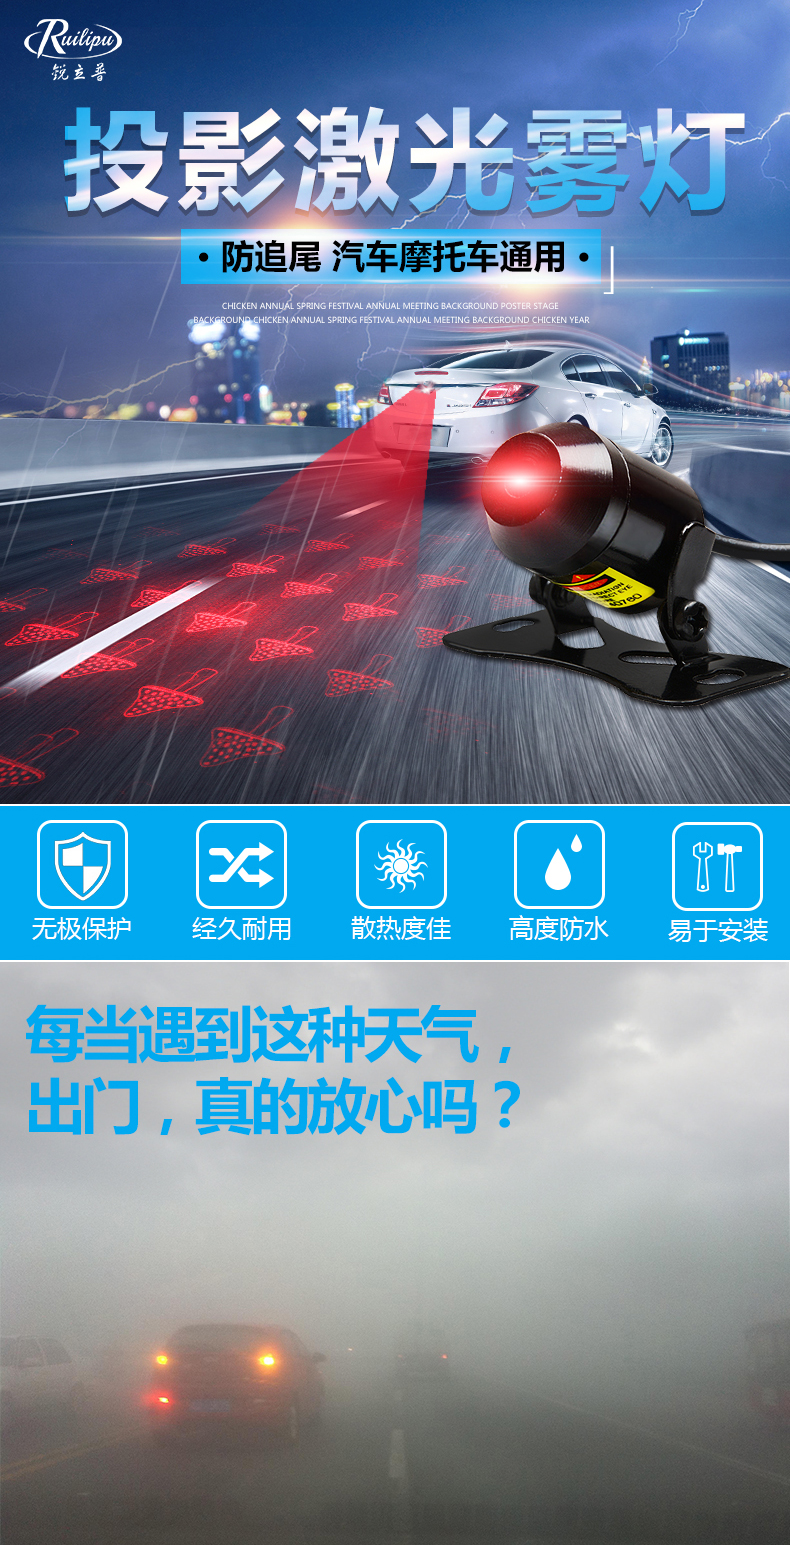 Rui Lipu chống-tailing ánh sáng laser xe máy điện đèn lồng đèn hậu đèn phanh cảnh báo WISP phụ kiện sửa đổi